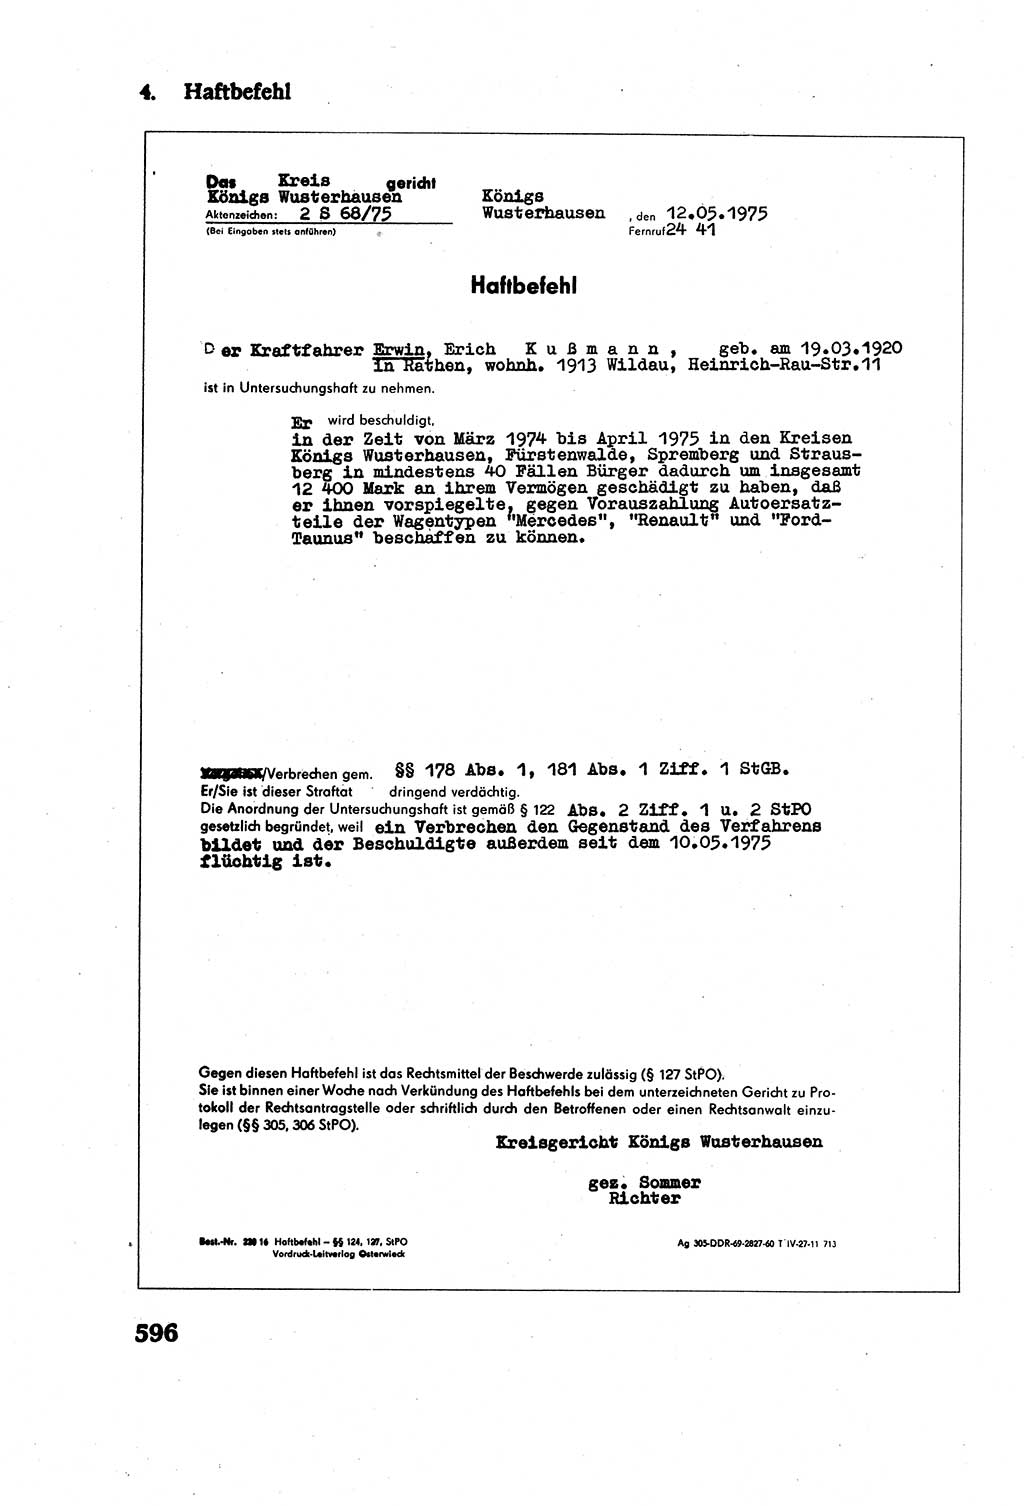 Strafverfahrensrecht [Deutsche Demokratische Republik (DDR)], Lehrbuch 1977, Seite 596 (Strafverf.-R. DDR Lb. 1977, S. 596)